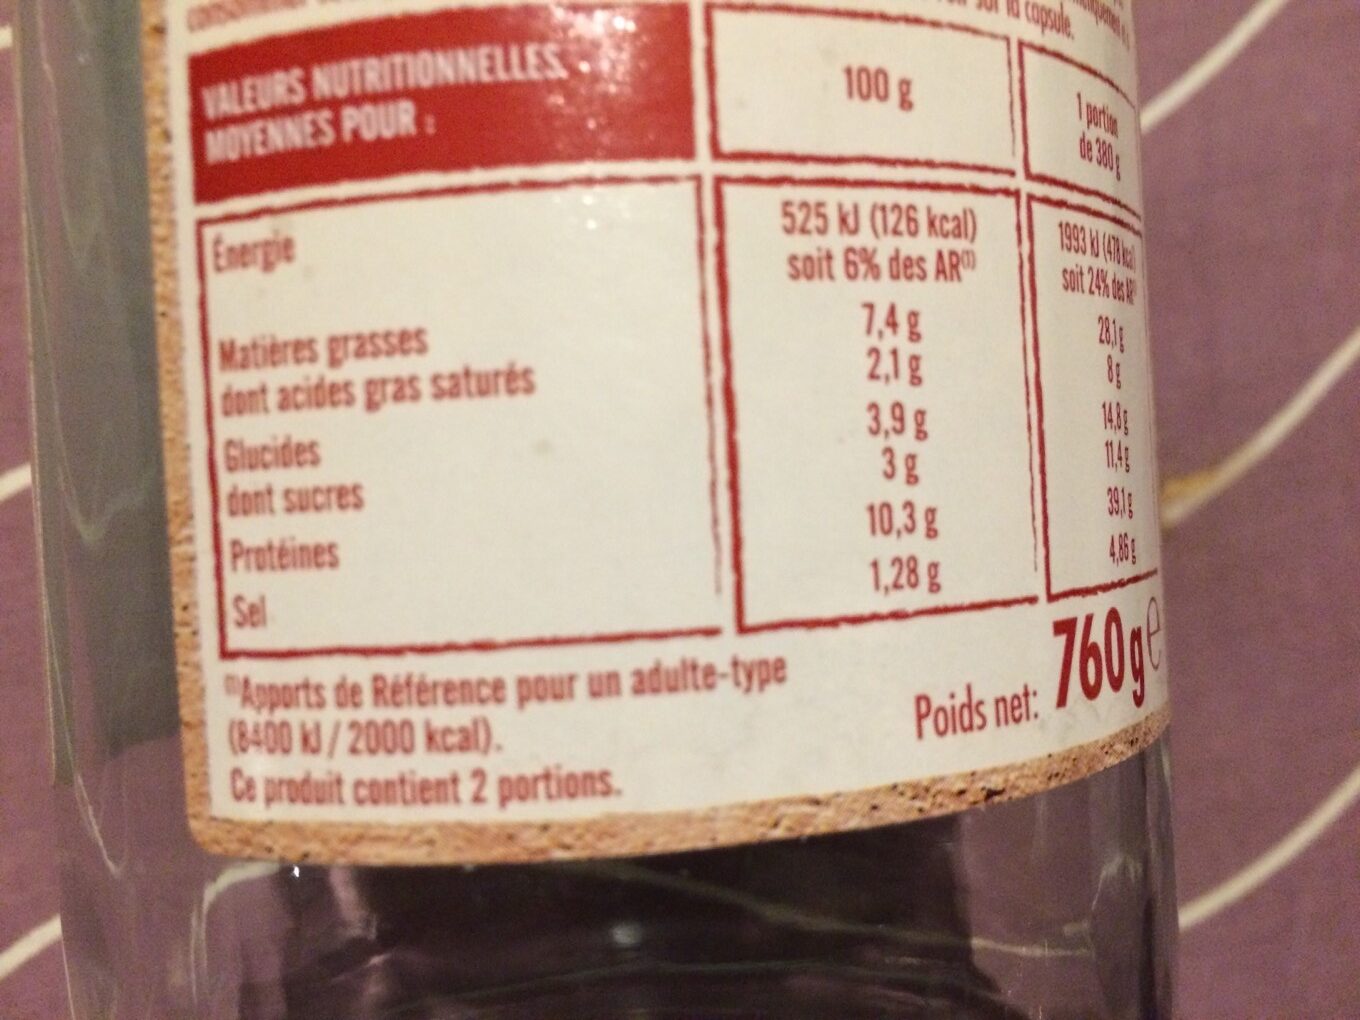 Poulet Basquaise - Tableau nutritionnel